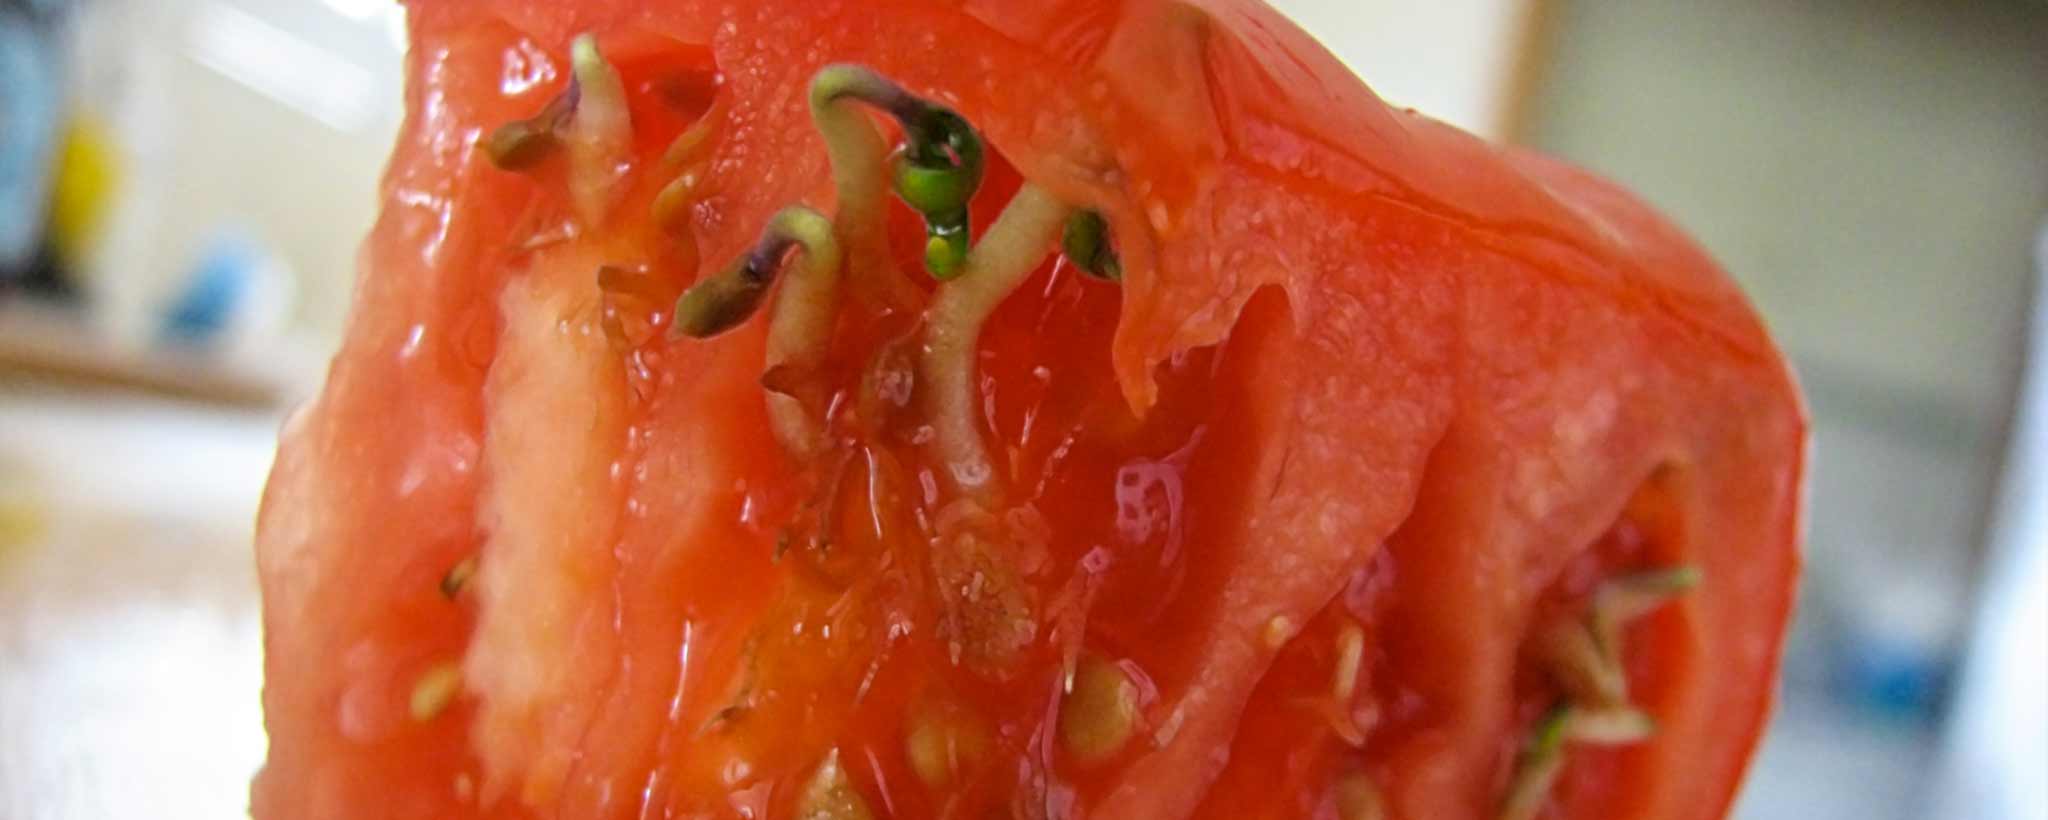 'Sprouting tomato'